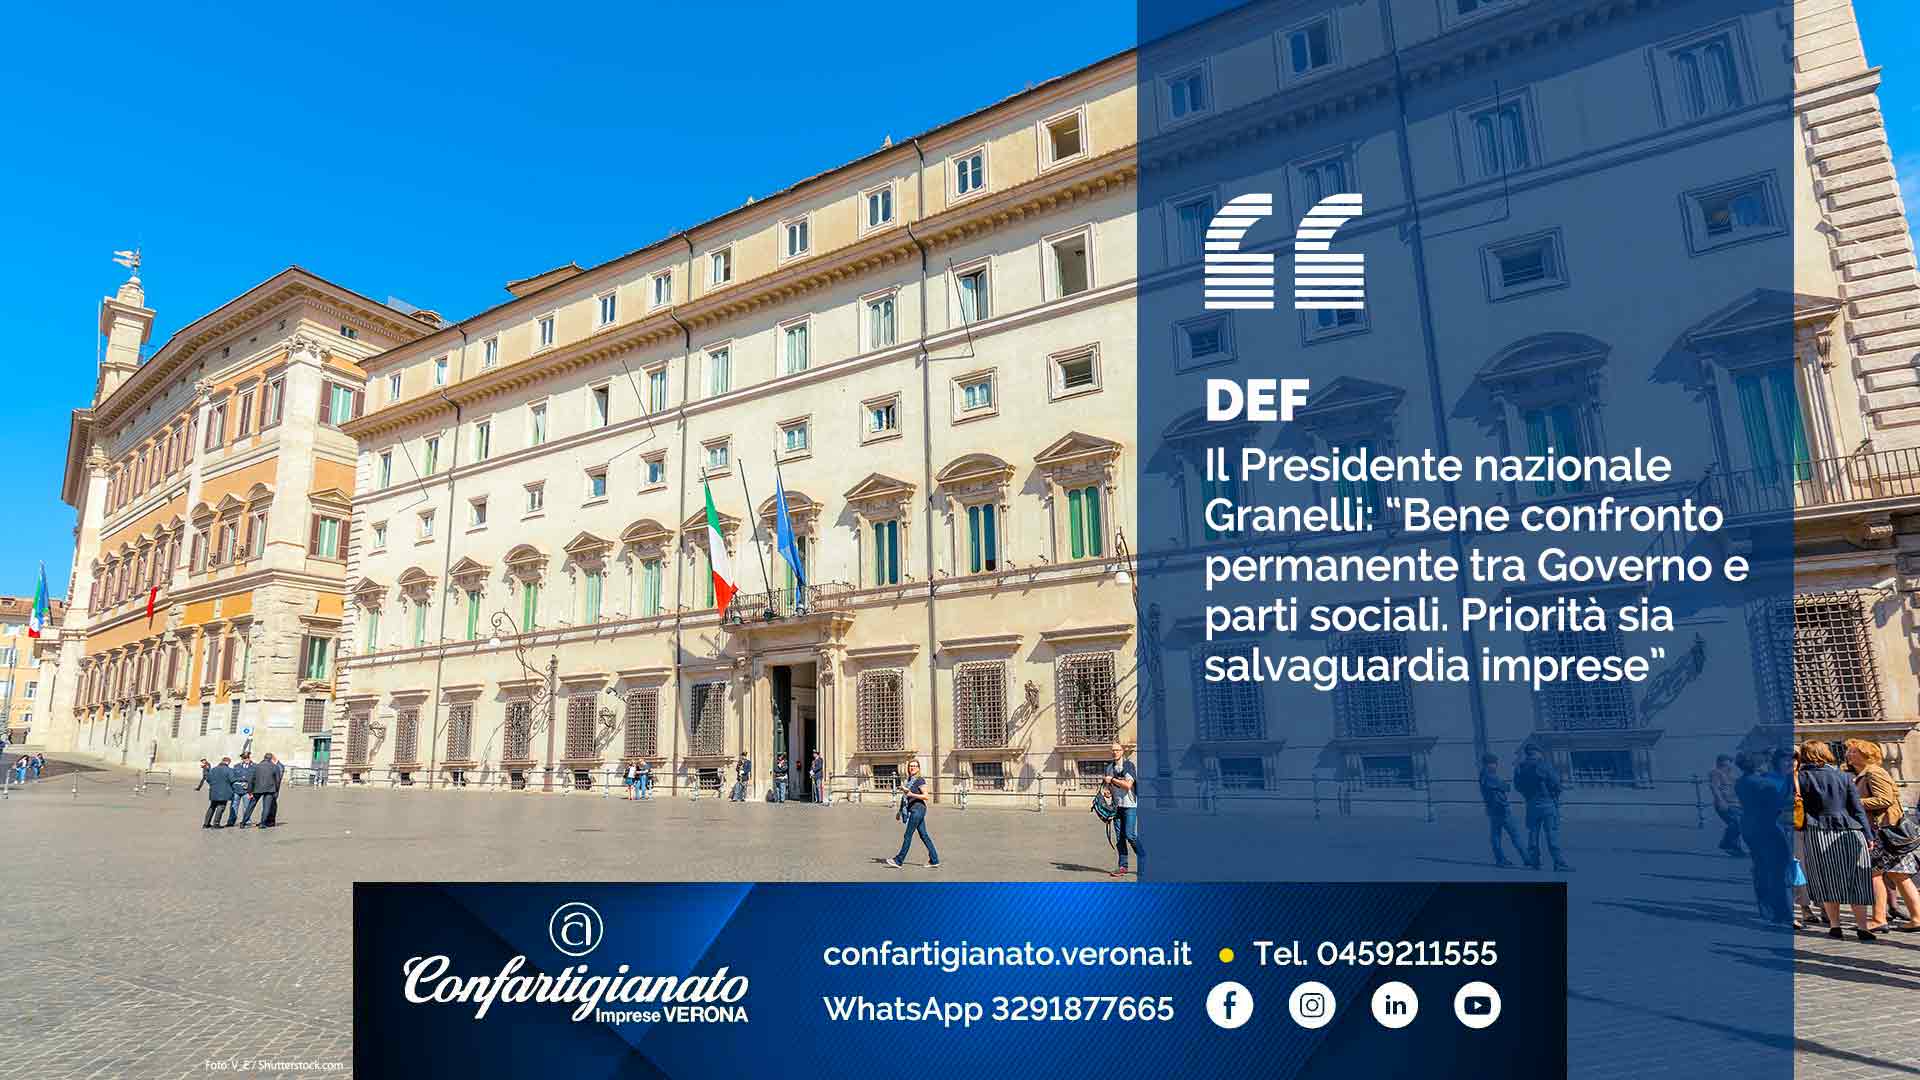 DEF – Il Presidente Granelli: “Bene confronto permanente Governo-parti sociali. Priorità sia salvaguardia imprese”